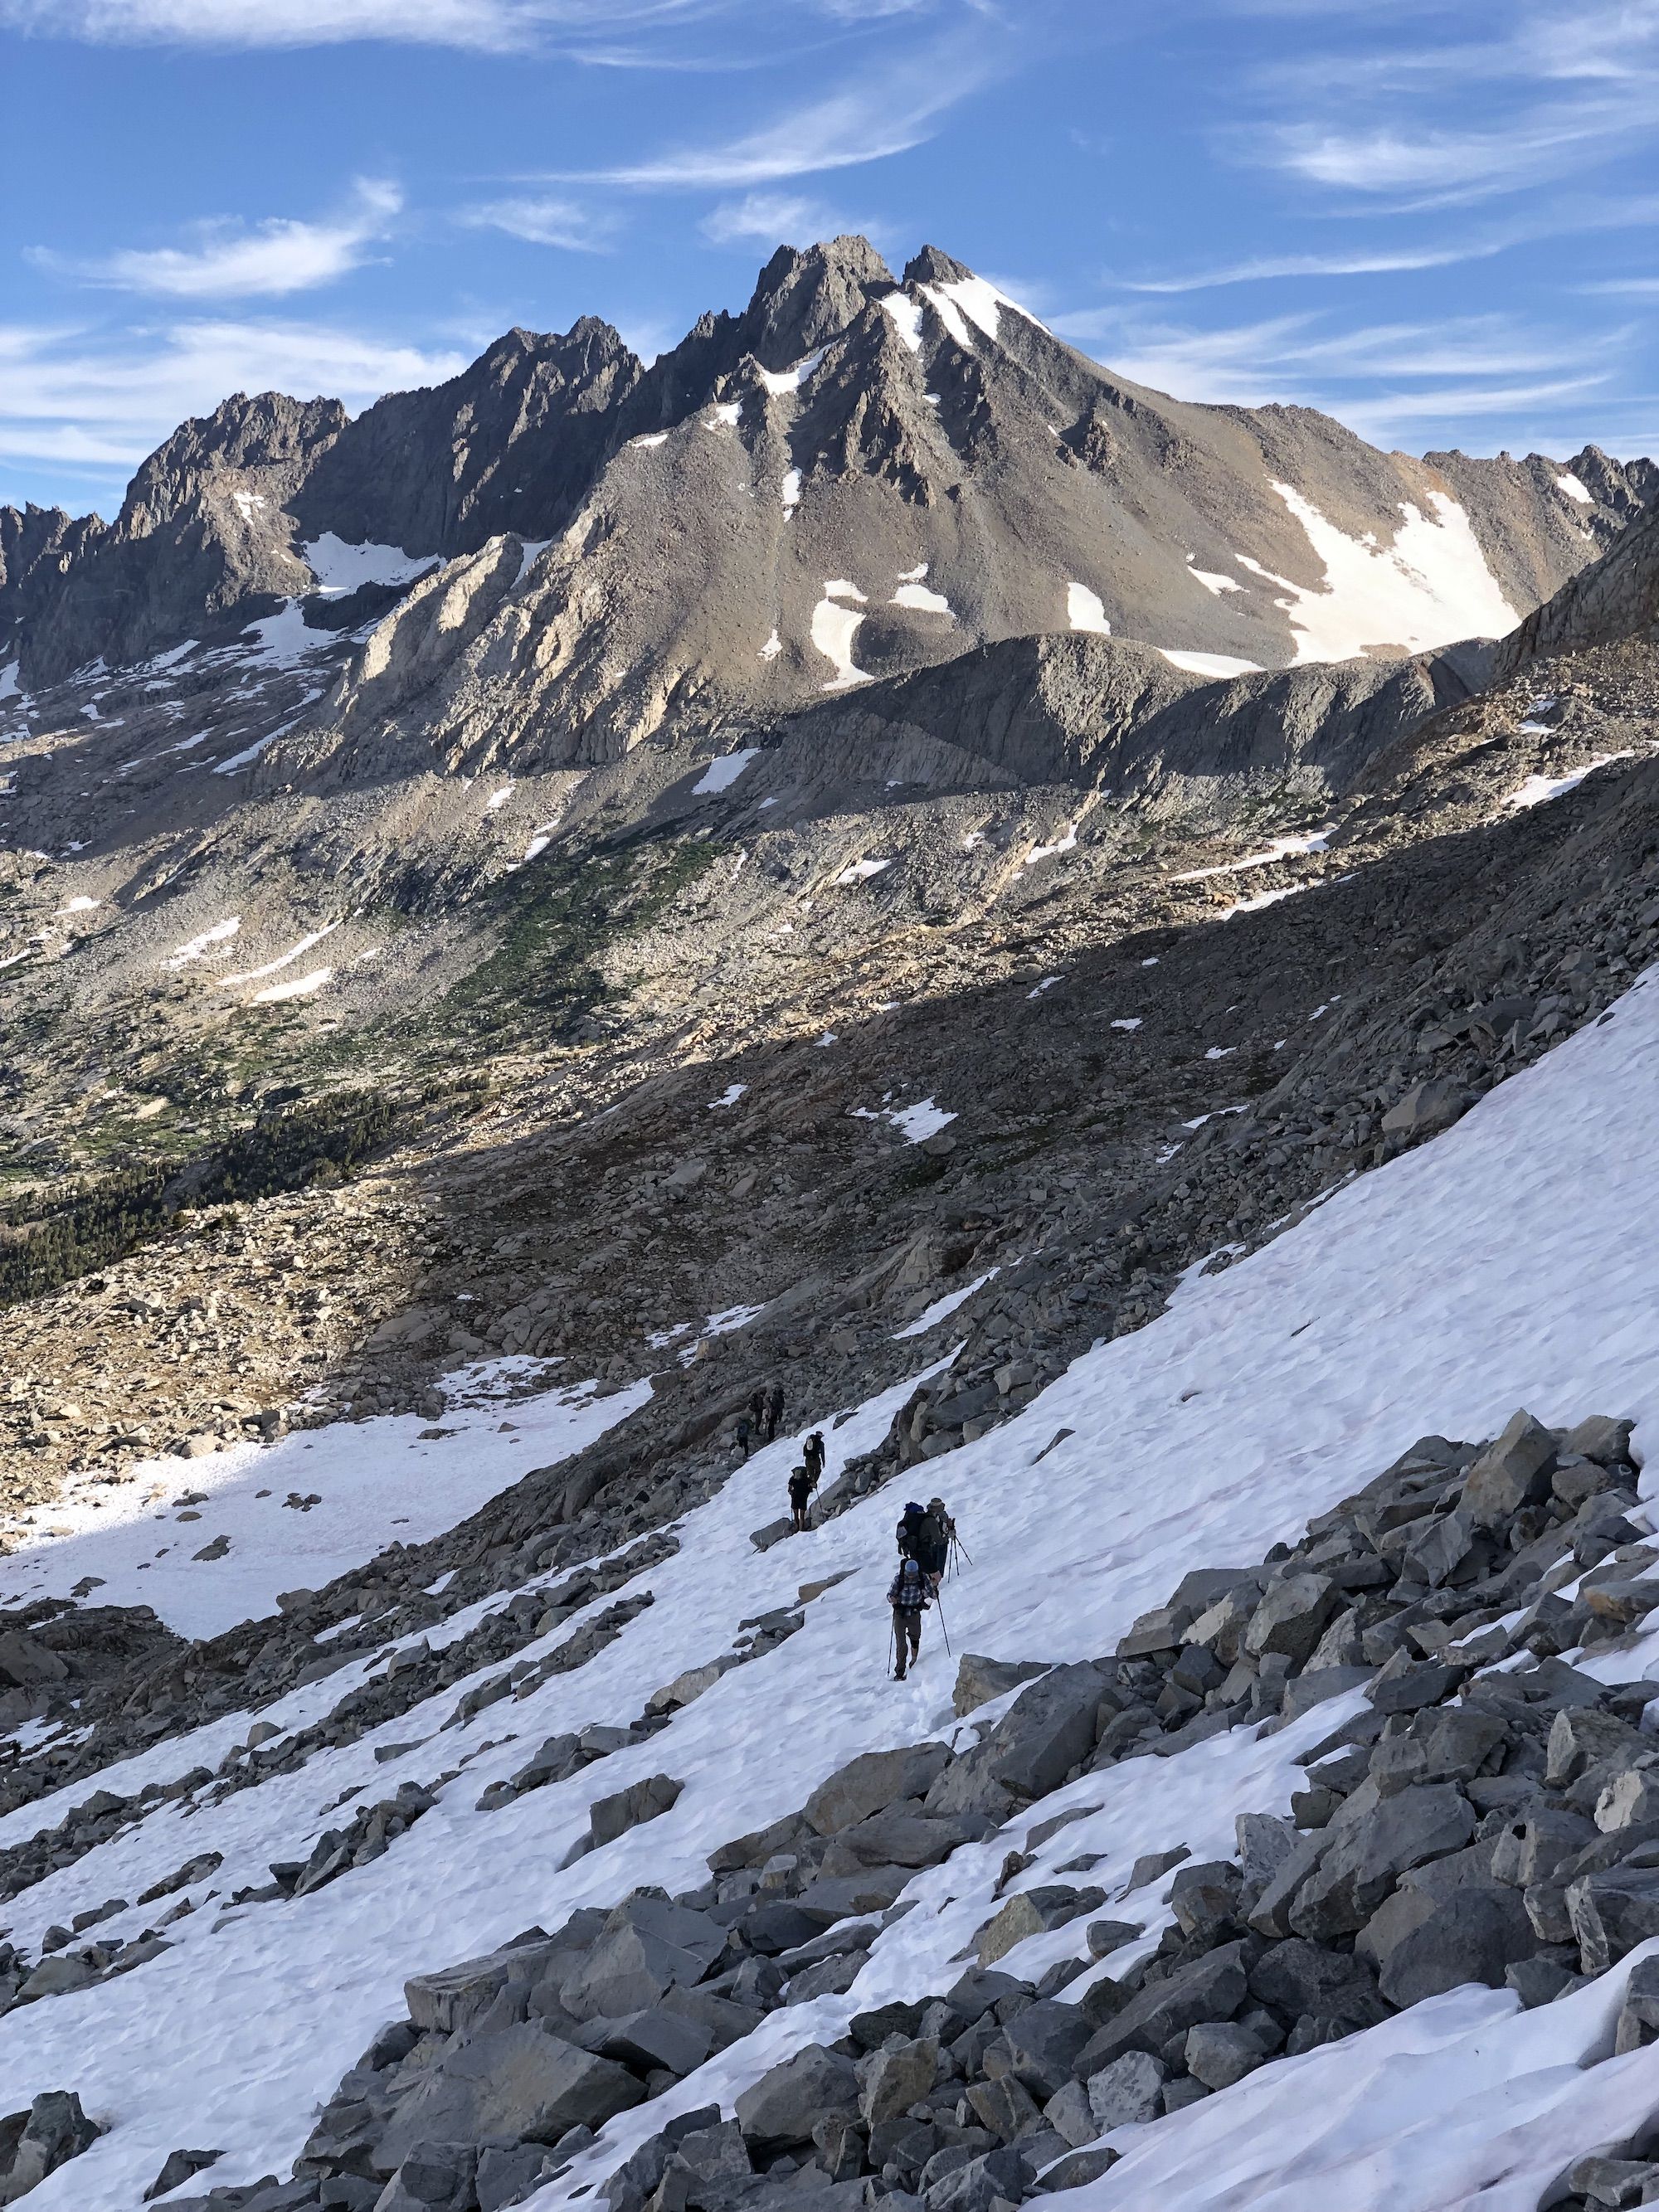 A line of hikers crossing a snowfield between rocks.